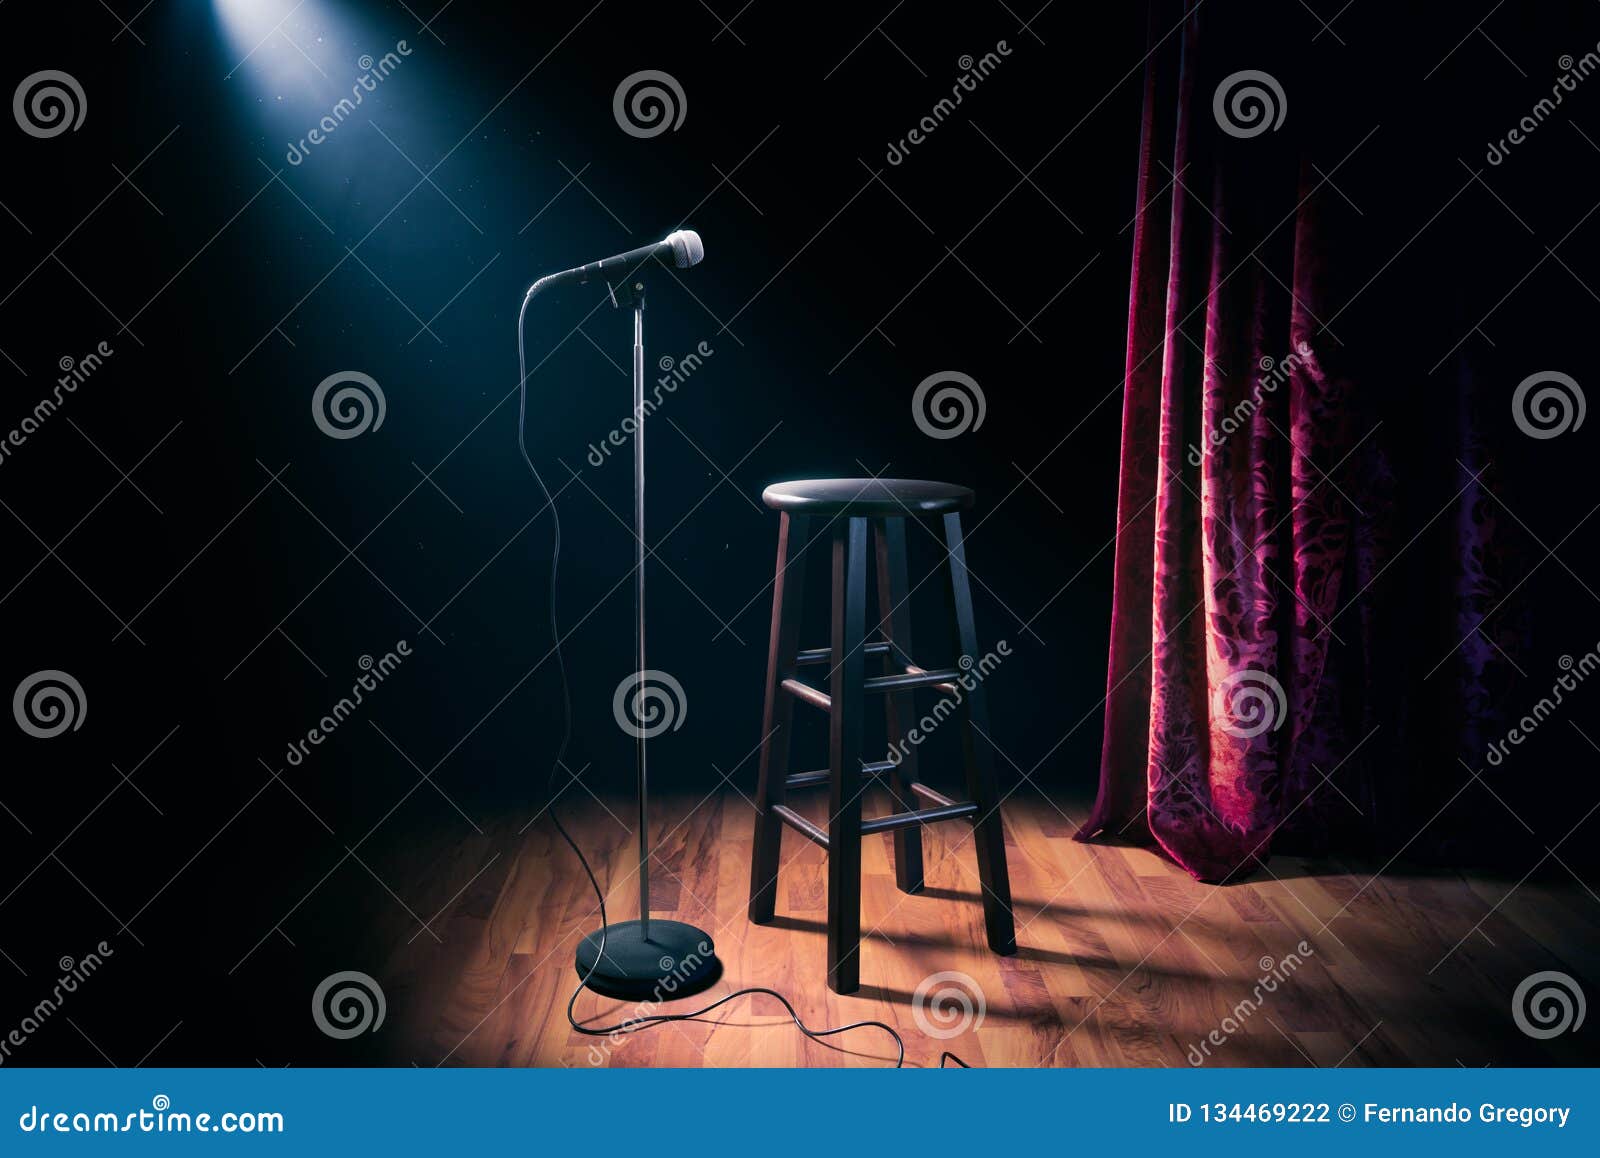 Mikrofon i drewniana stolec na stojaku w górę komediowej sceny z odbłyśnika promieniem, wysokiego kontrasta wizerunek. Mikrofon na scenie z drewnianą stolec